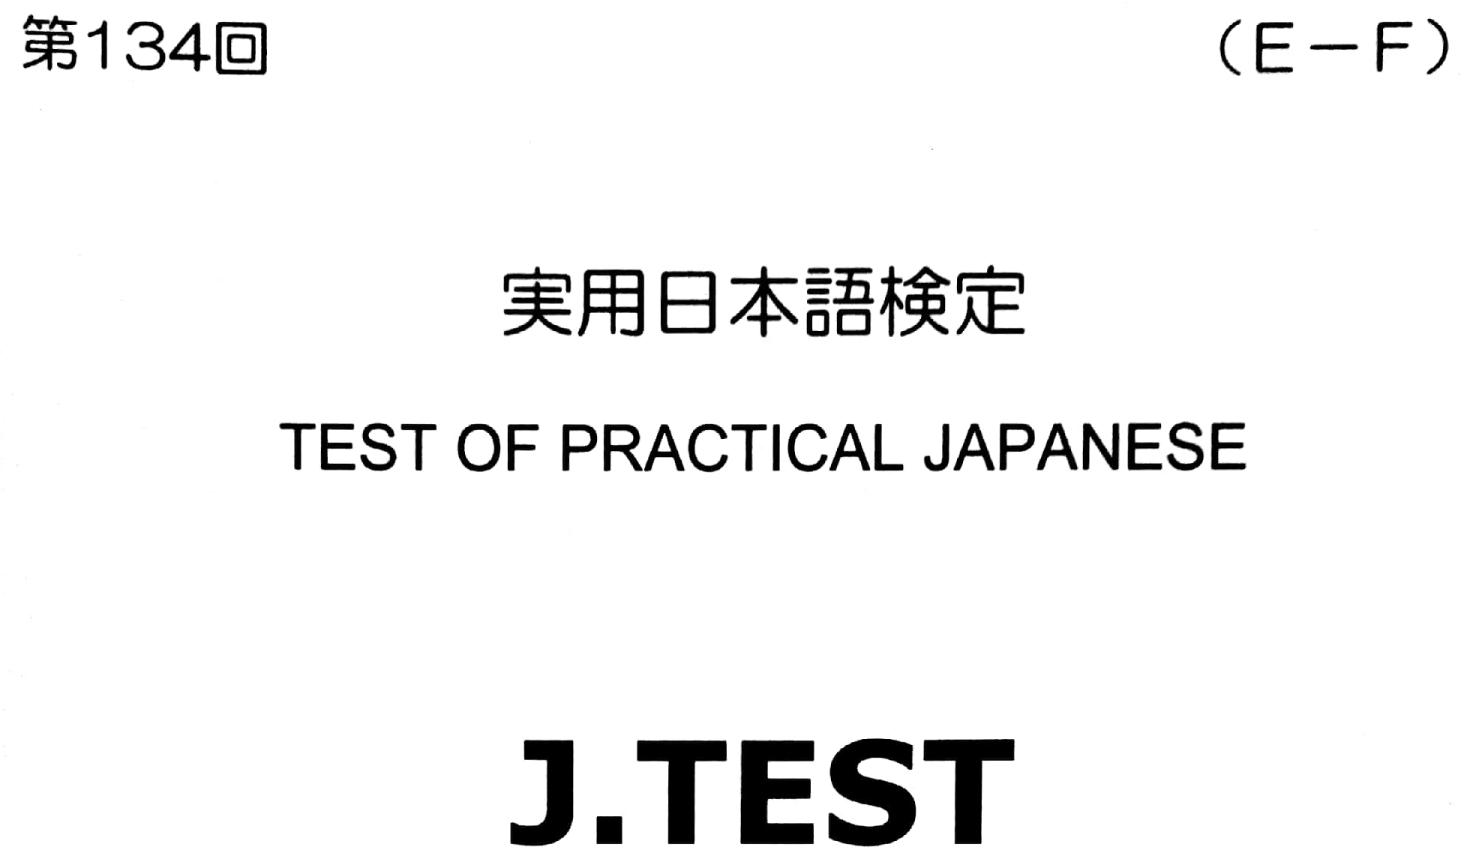 2017年 J.TEST 实用日本语检定（E-F级）   第134回考试